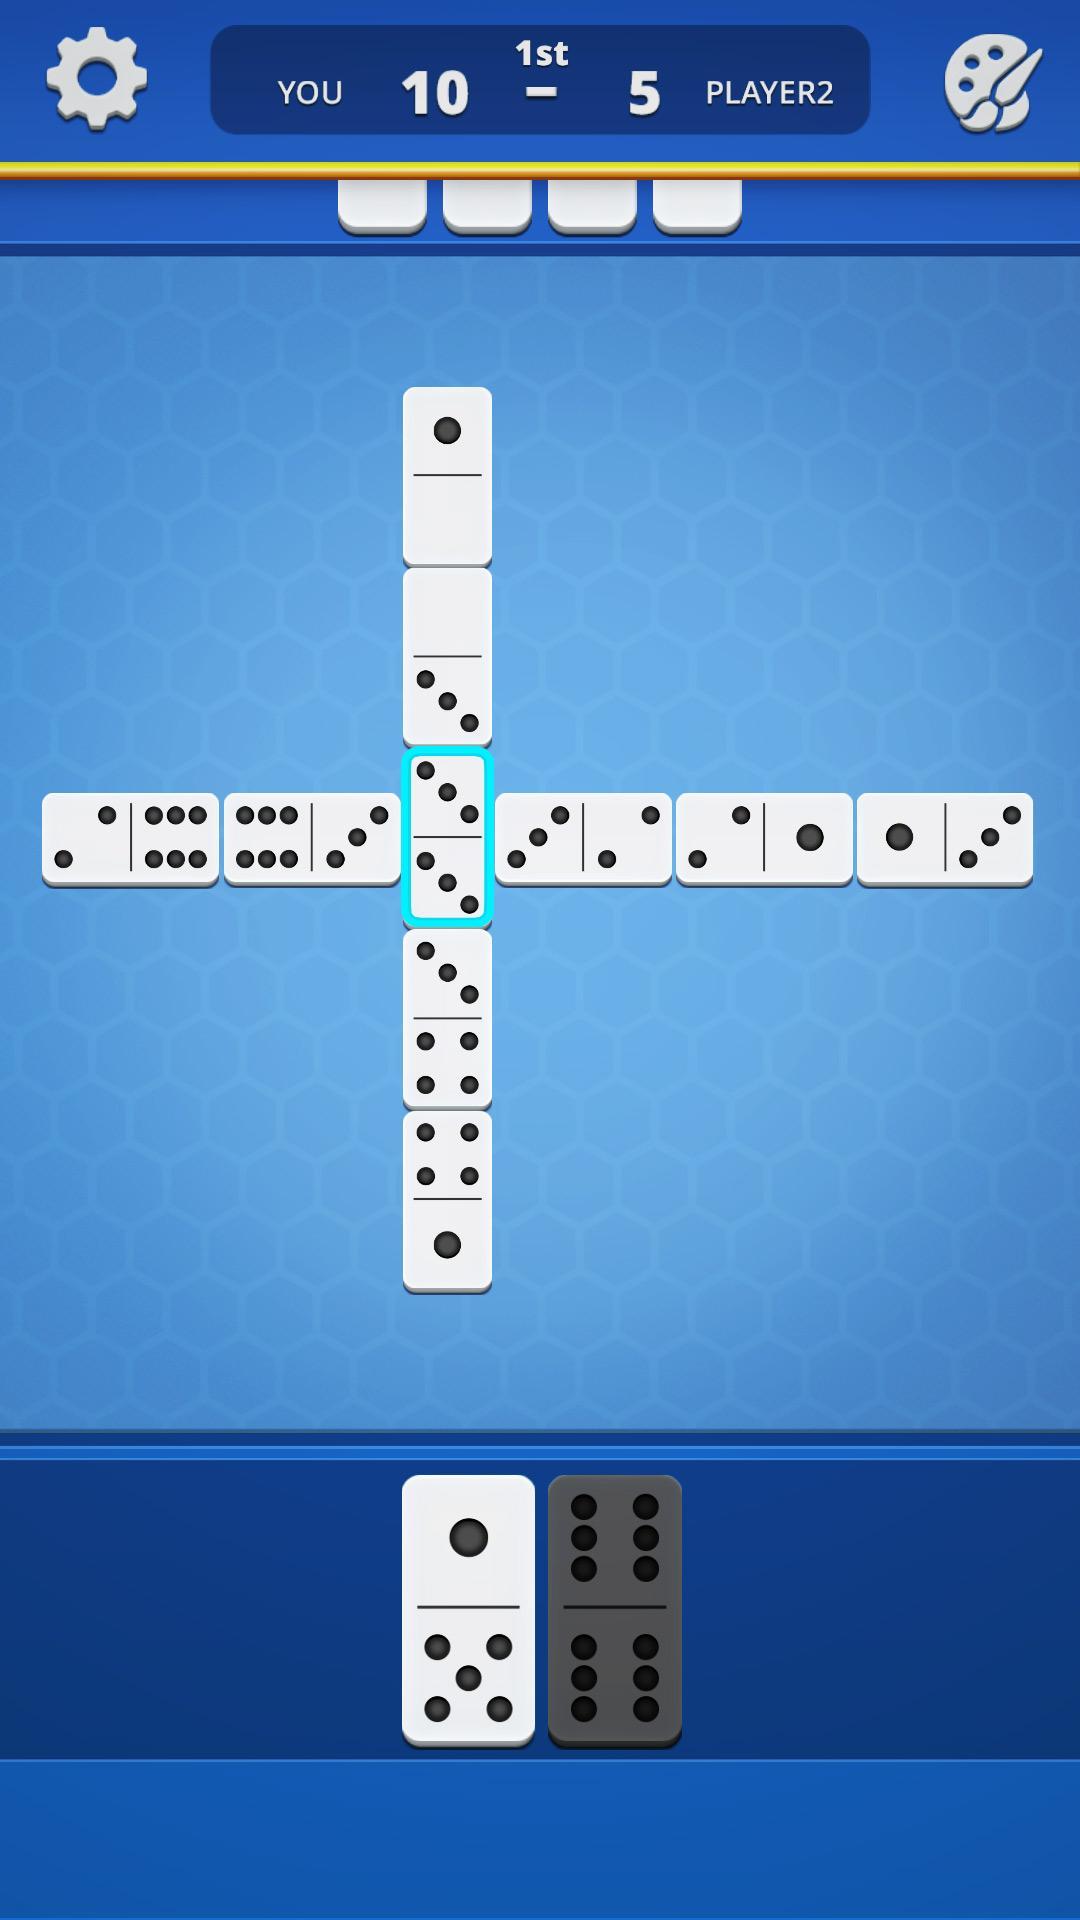 Dominoes Classic Domino Tile Based Game 1.2.5 Screenshot 11